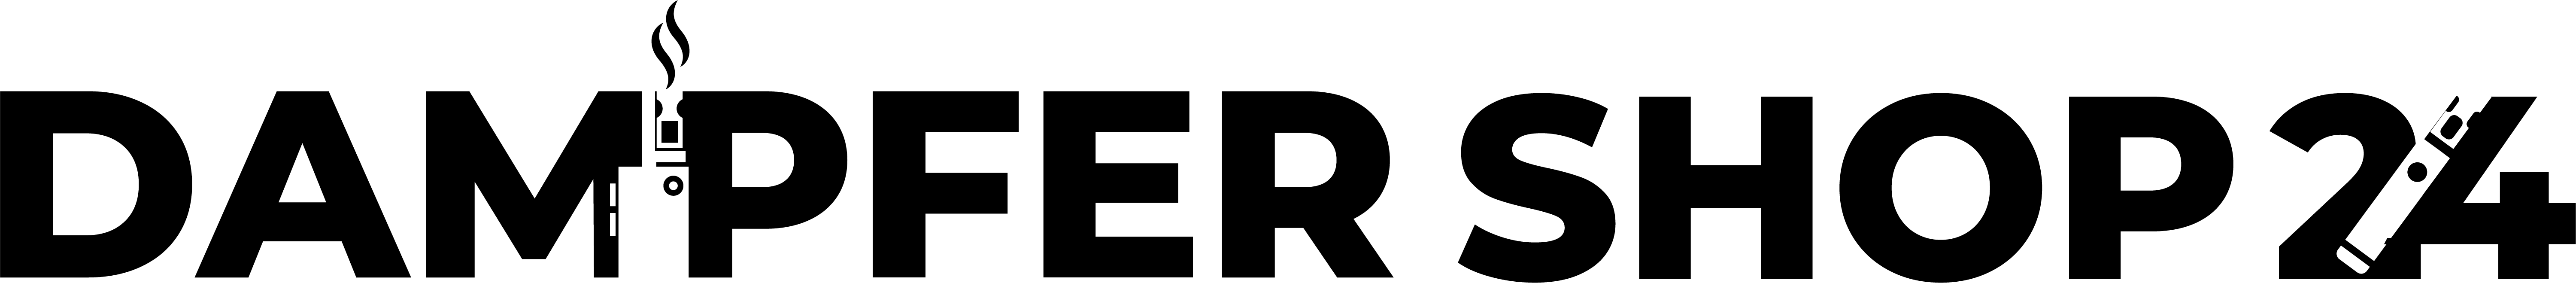 Logo Dampfer Shop 24 dunkel